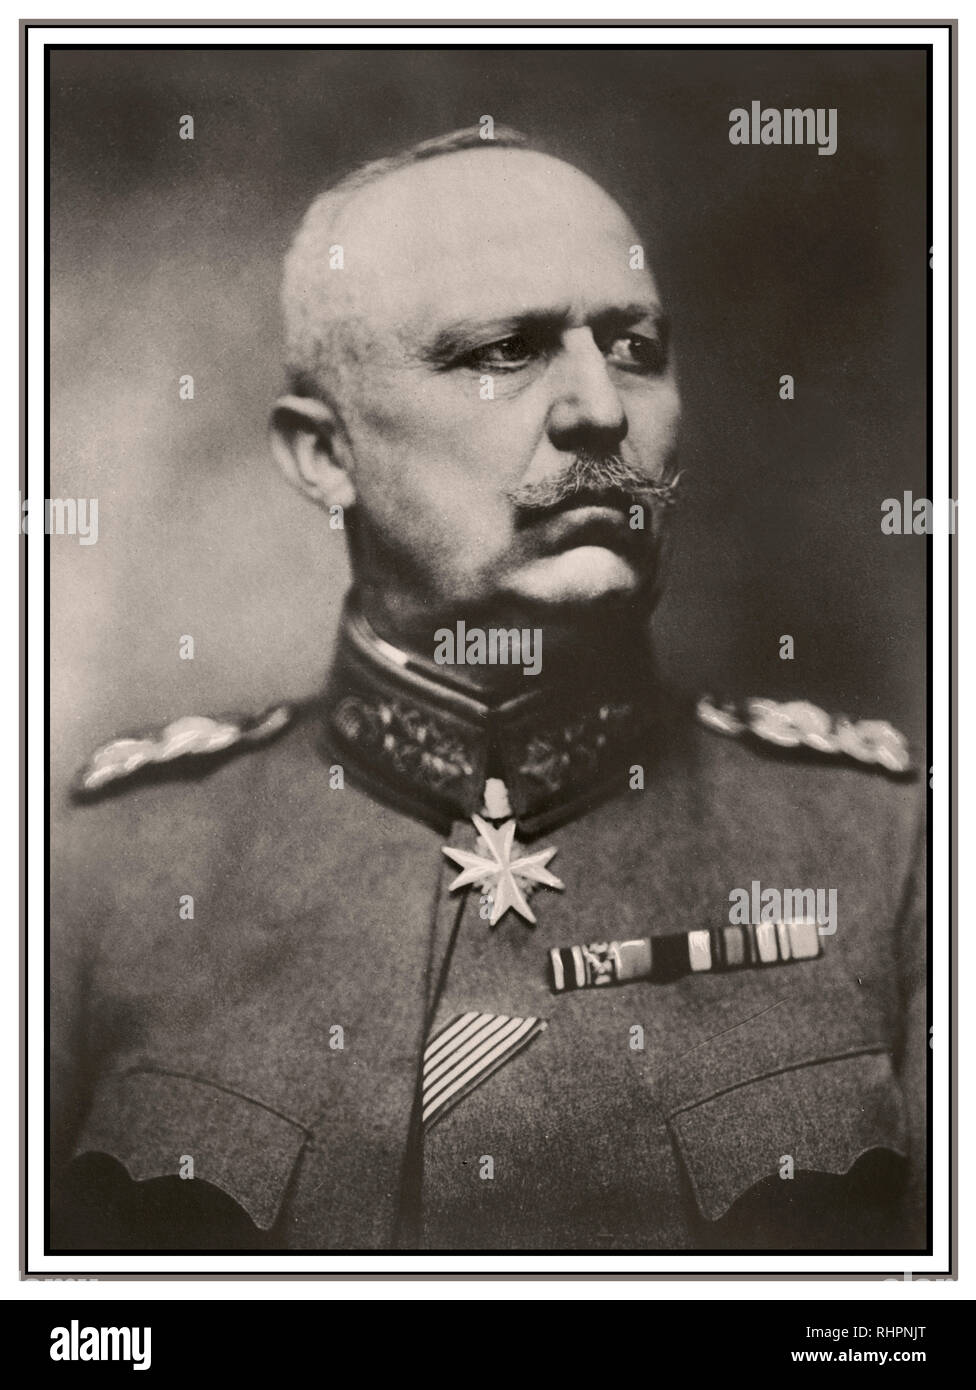 Erich Ludendorff (1865 - 1937) le port pour le mérite, la plus haute distinction militaire de l'Allemagne comme un général allemand il a obtenu d'importants succès à Liège et Tannenburg. Il s'est levé pour être co-responsable de l'armée allemande avec Hindenburg. Il était un commandant sans compromis difficiles et a plaidé en faveur d'une guerre sous-marine sans restriction et la politique de 'la société'. Il a également dirigé l'échec de la dernière offensive allemande de 1918. Banque D'Images